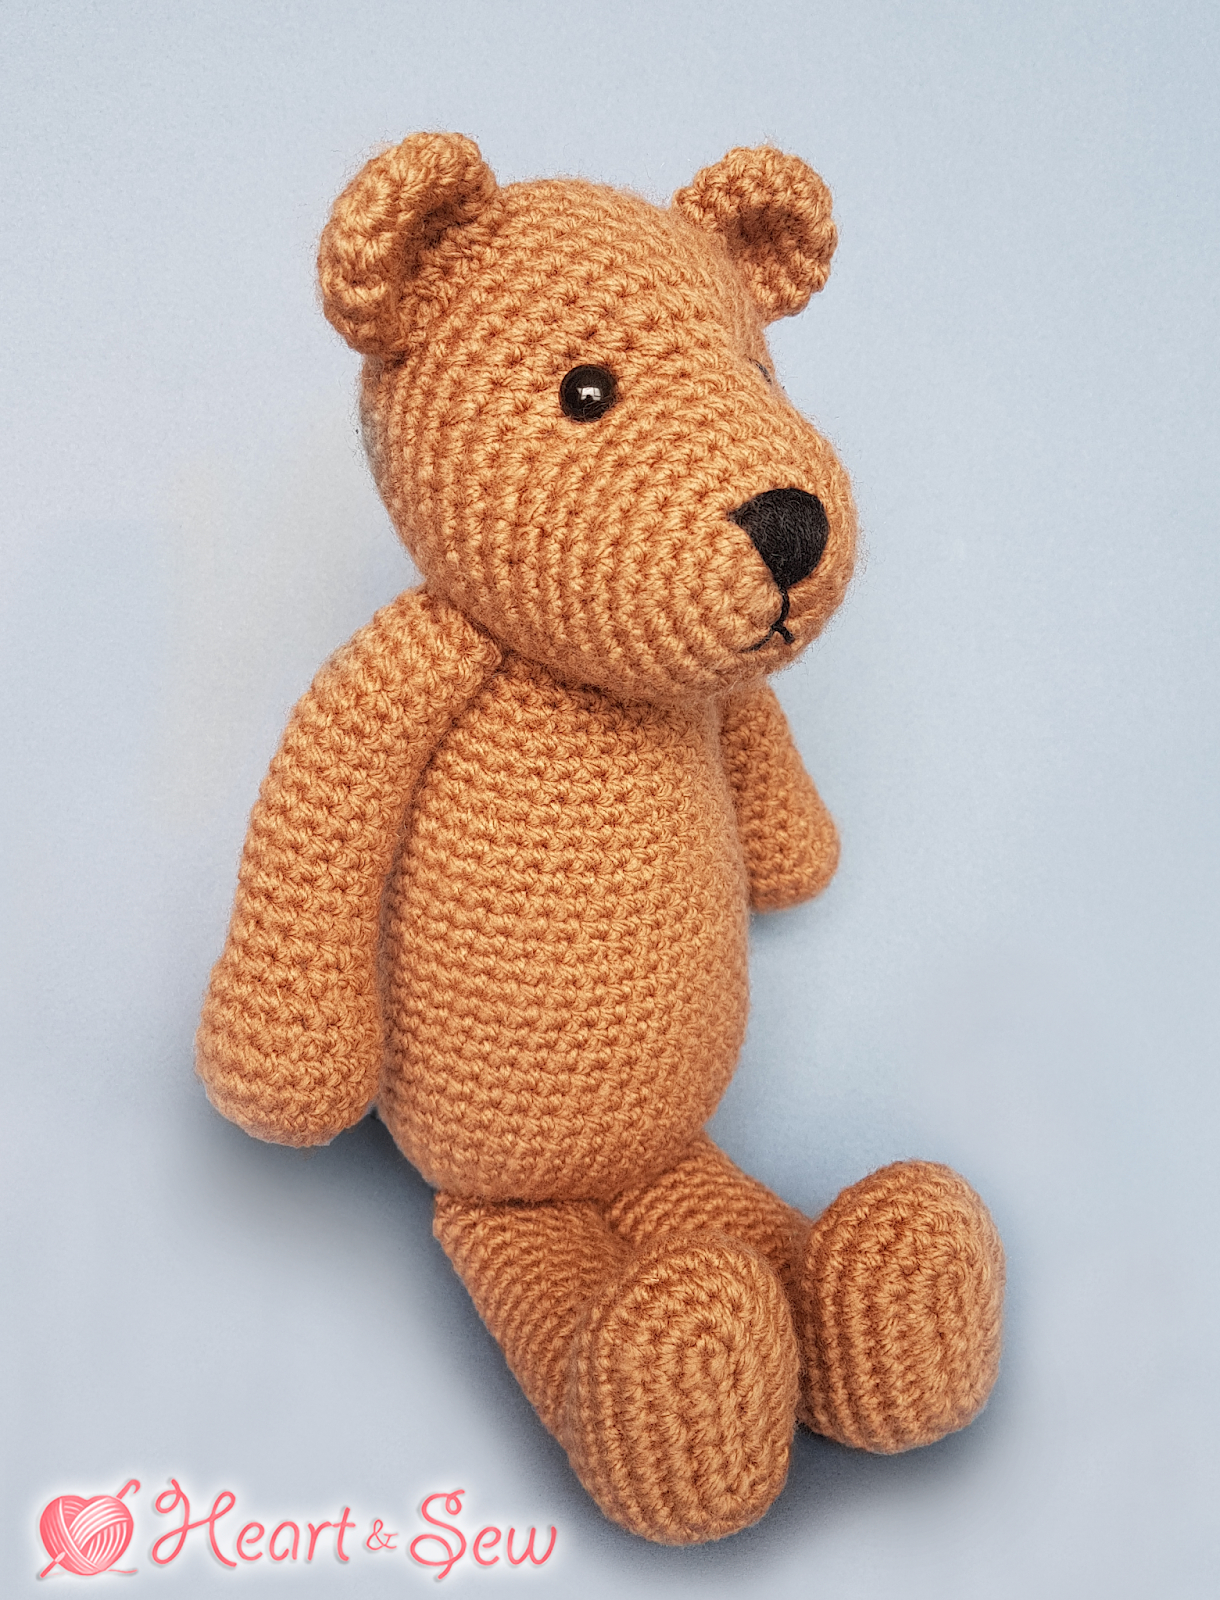 Amigurumi Bear Crochet Pattern Heart Sew Bertie Bear Free Crochet Amigurumi Pattern